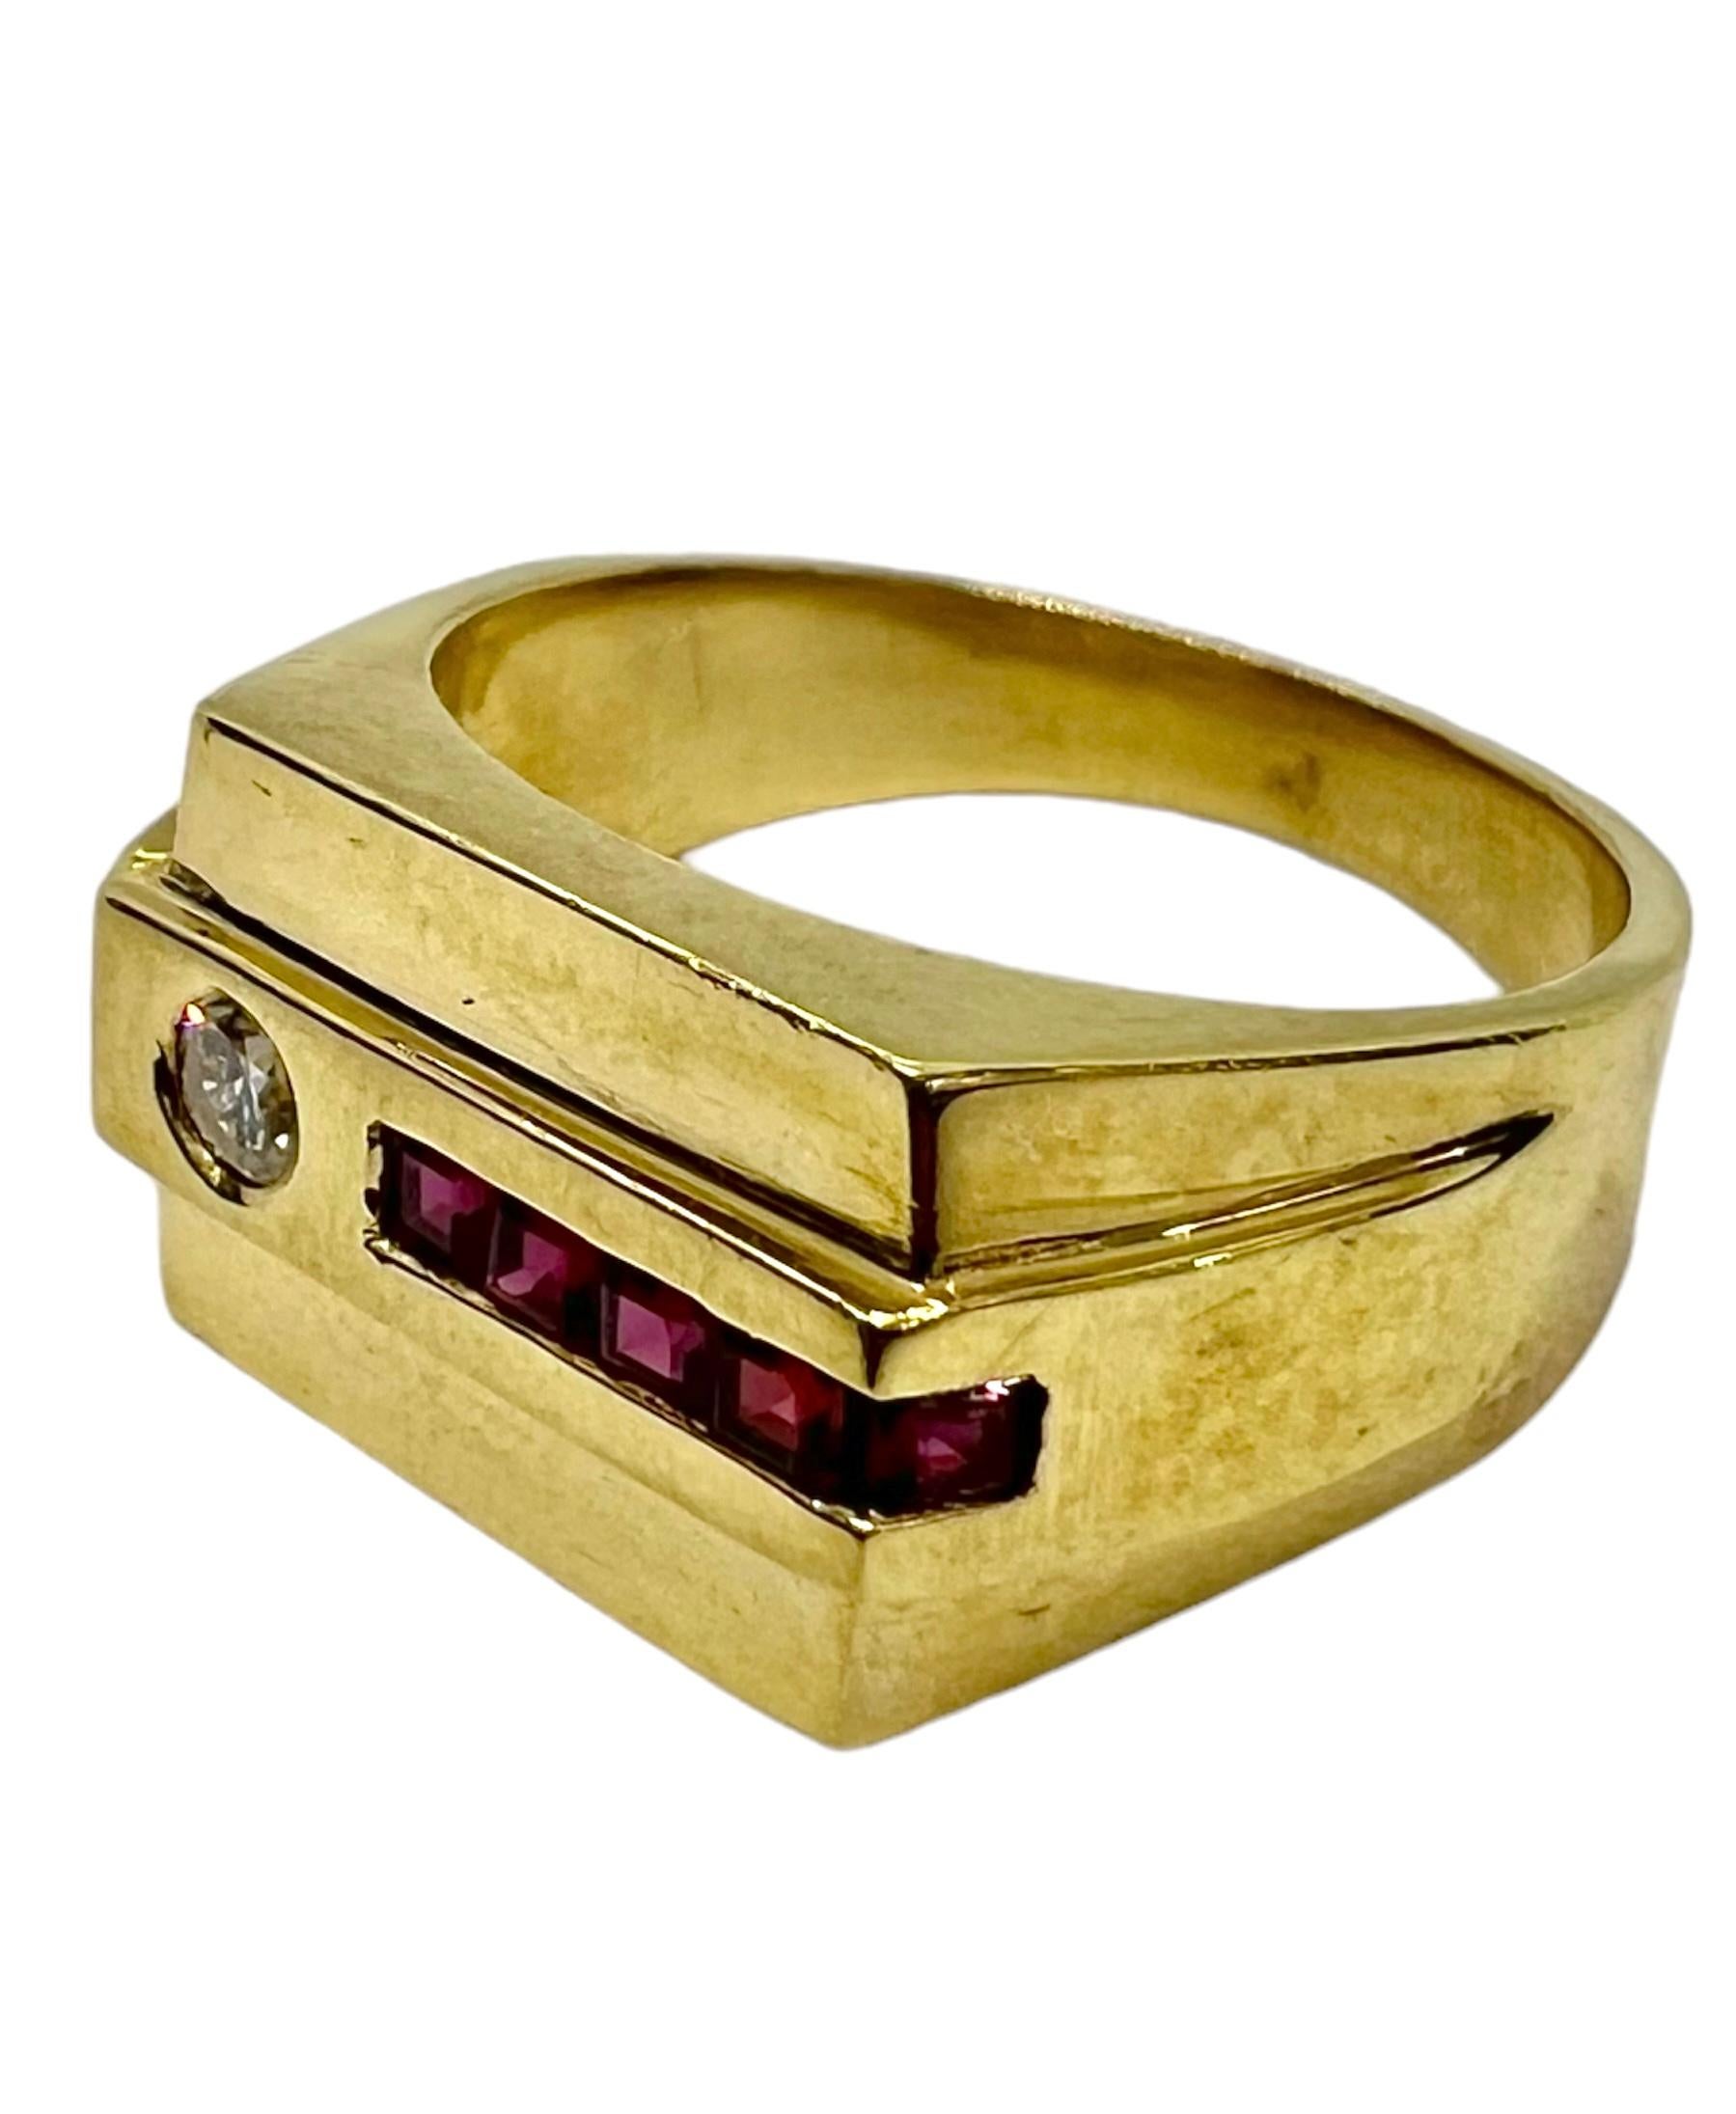 Ring aus Gelbgold mit Rubinen im Quadratschliff und runden Diamanten.

Sophia D von Joseph Dardashti LTD ist seit 35 Jahren weltweit bekannt und lässt sich vom klassischen Art-Déco-Design inspirieren, das mit modernen Fertigungstechniken